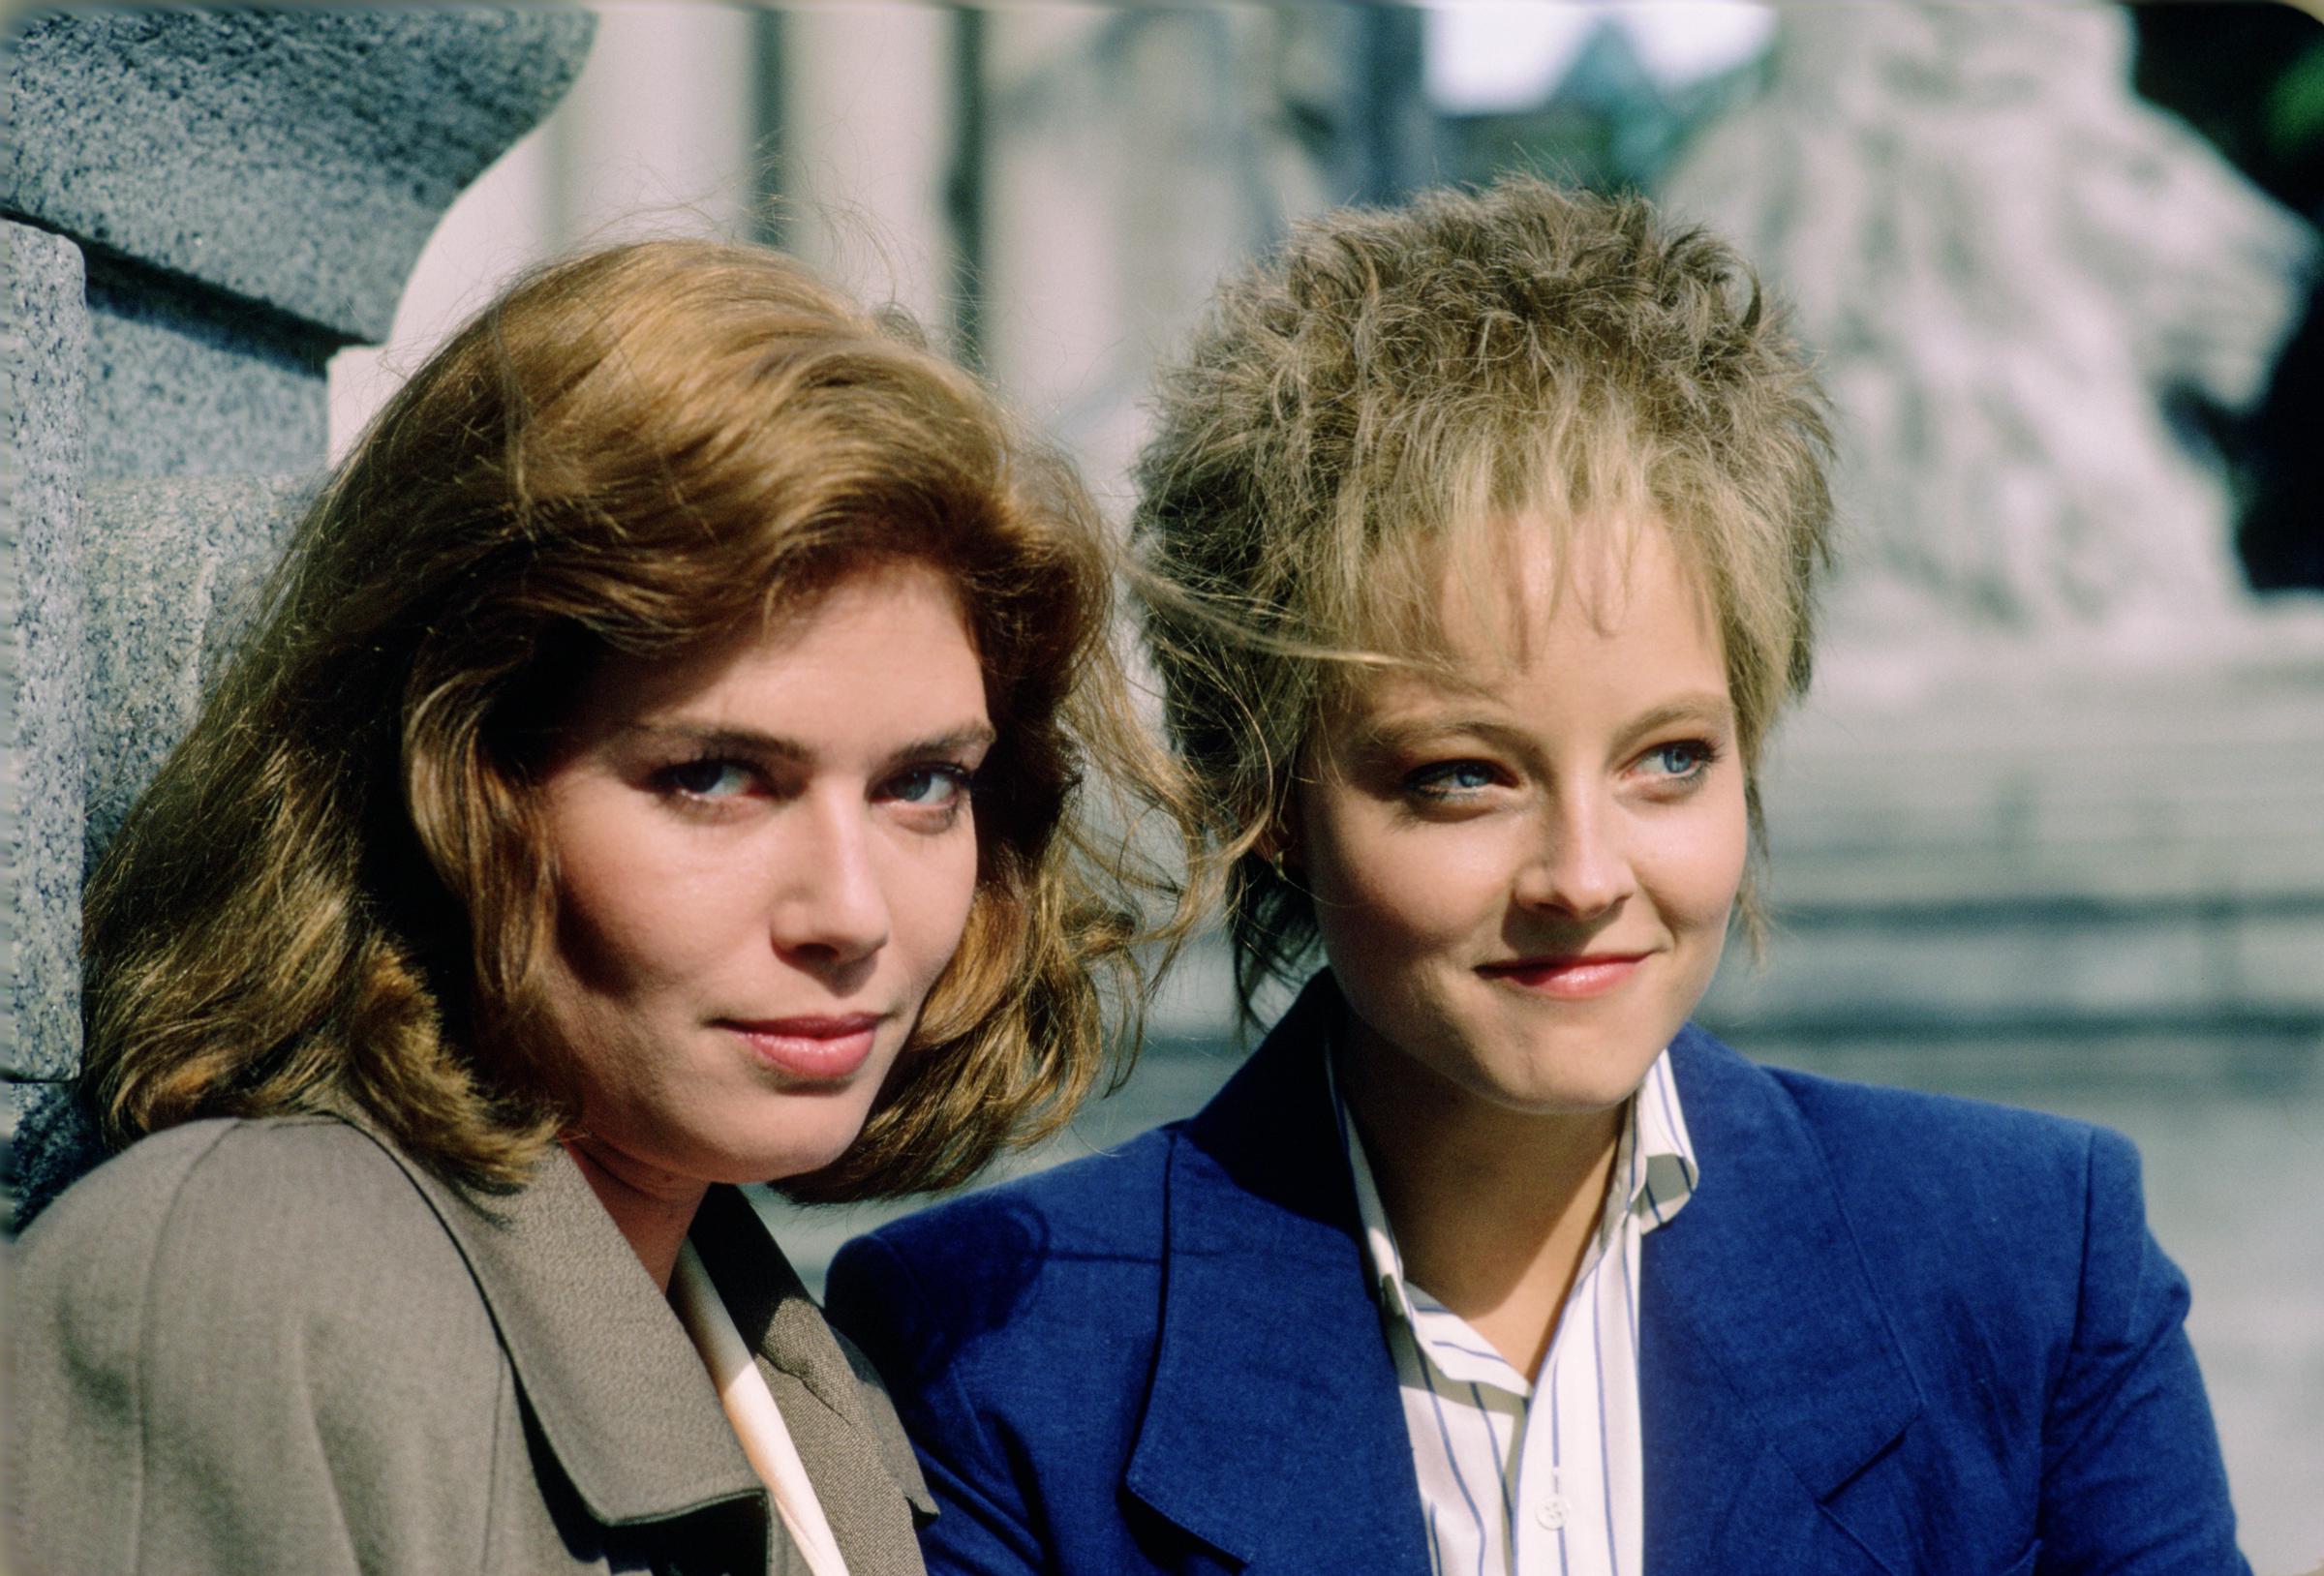 Kelly McGillis et Jodie Foster lors d'un photoshoot pour la promotion de "The Accused" en juin 1987 à Vancouver, Canada. | Source : Getty Images